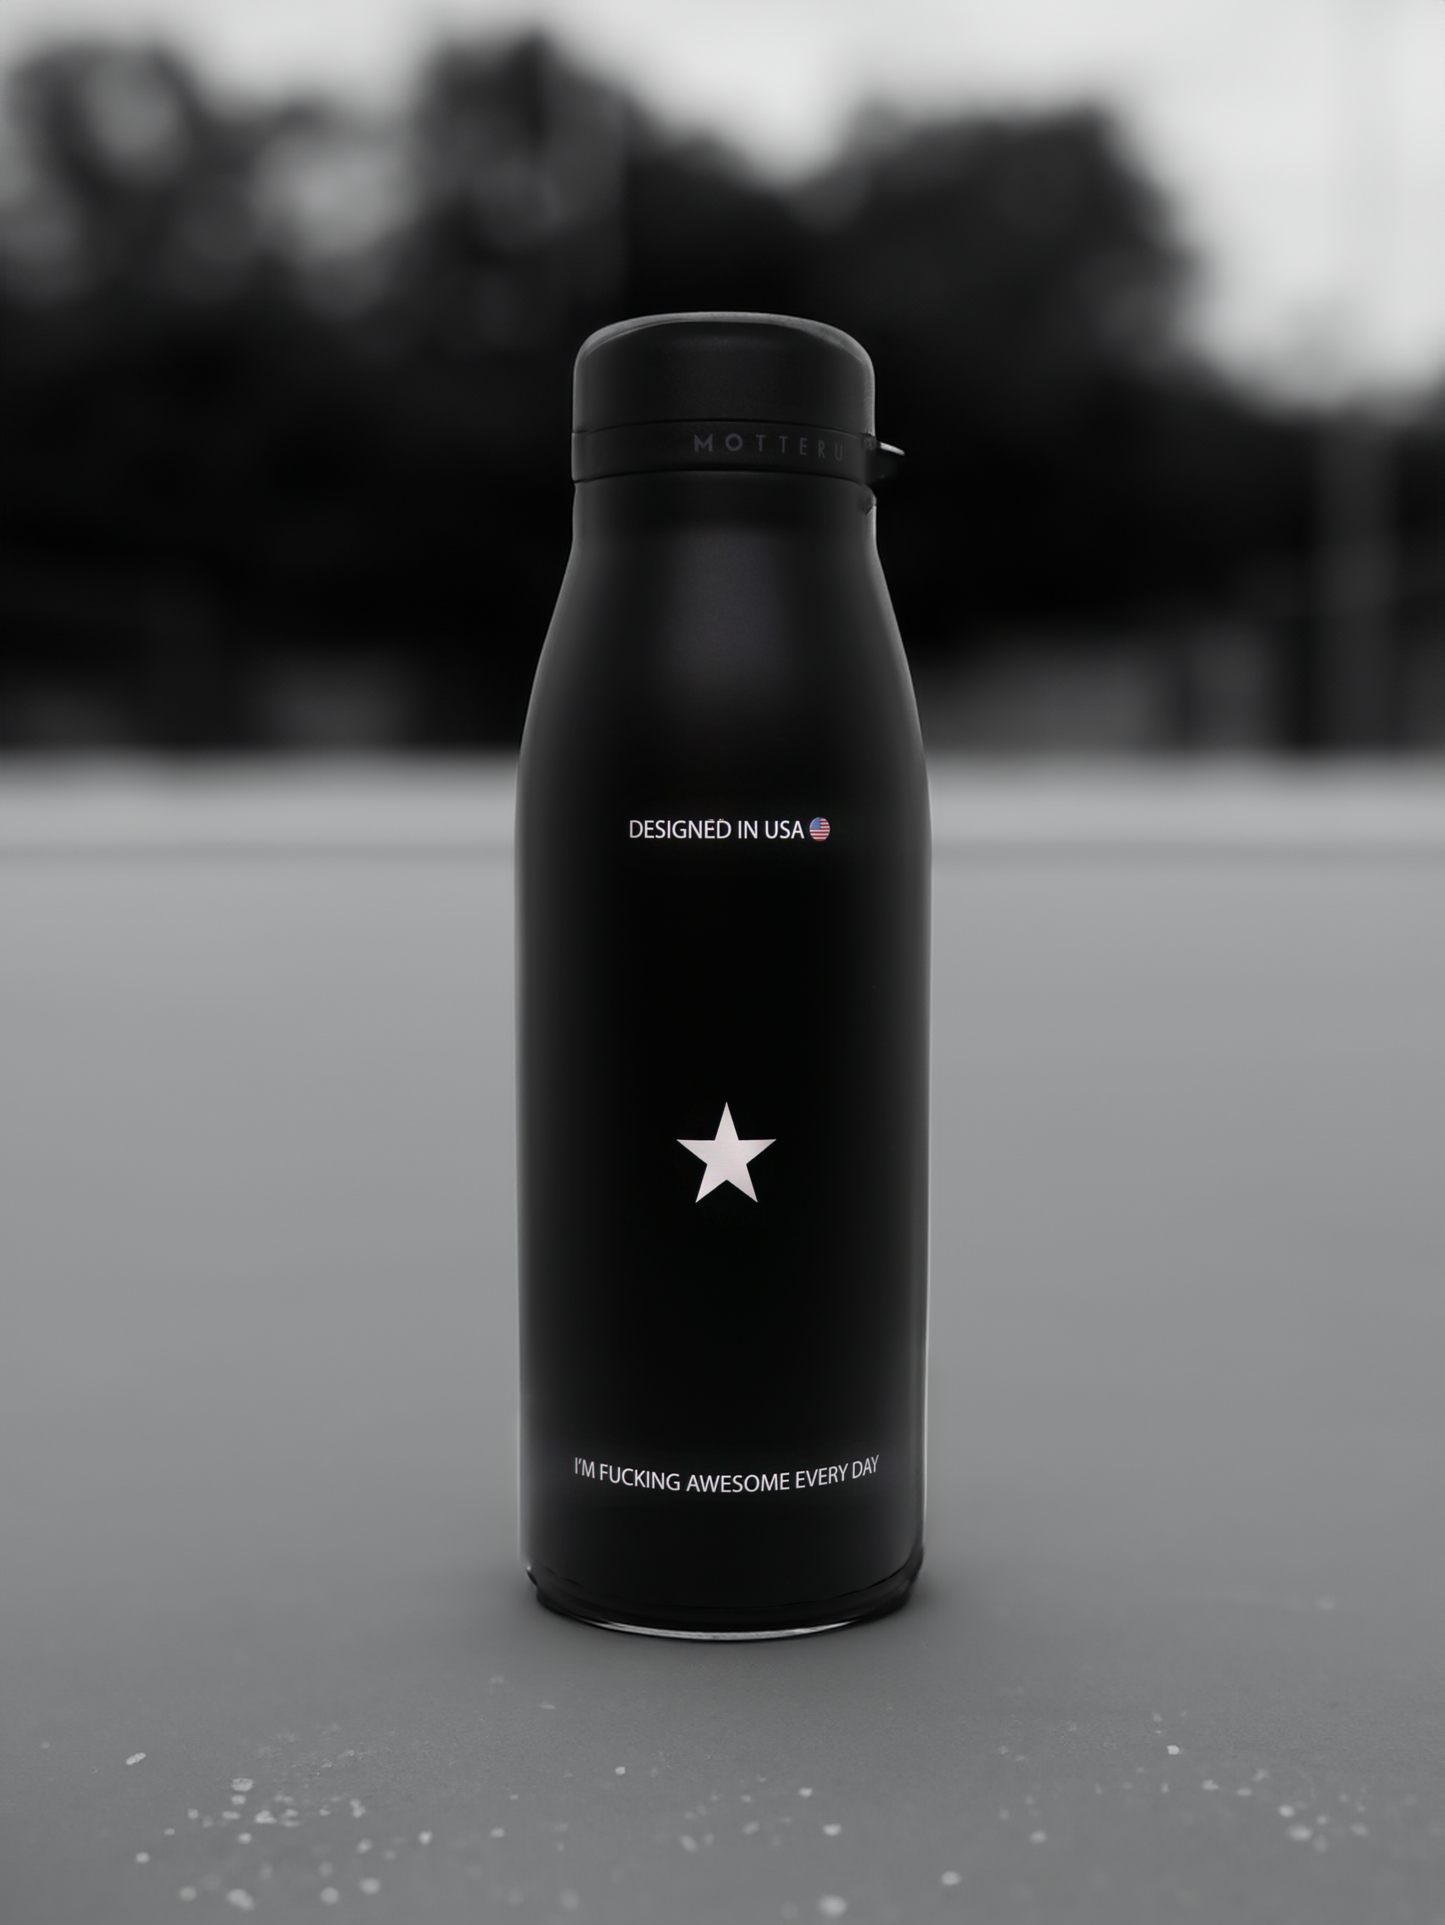 ブラックの断熱ボトル、白い星と「DESIGNED IN USA」の文字が特徴。